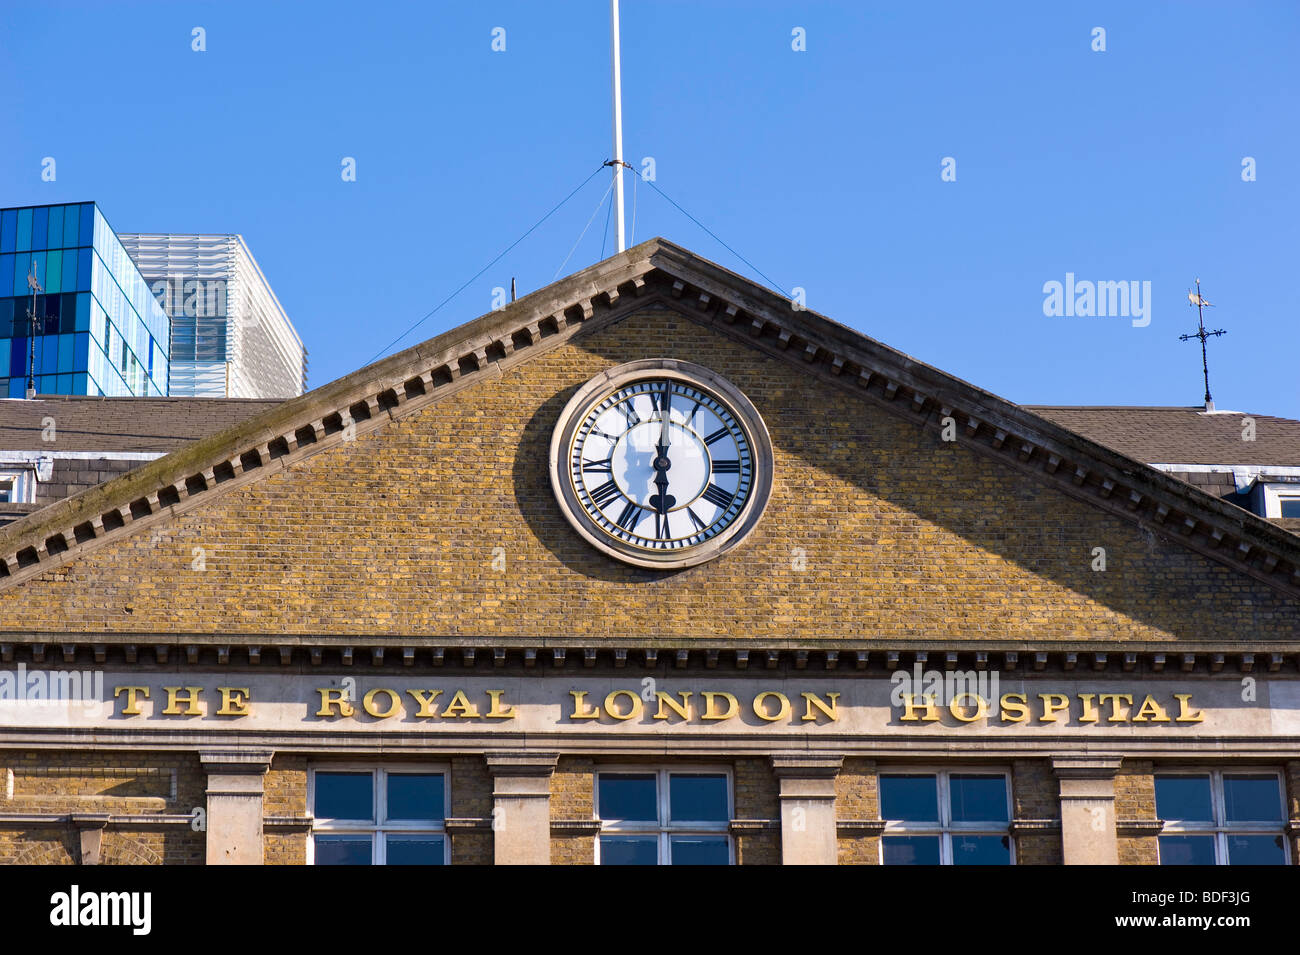 El Royal Hospital de Londres, E1, Londres, Reino Unido. Foto de stock